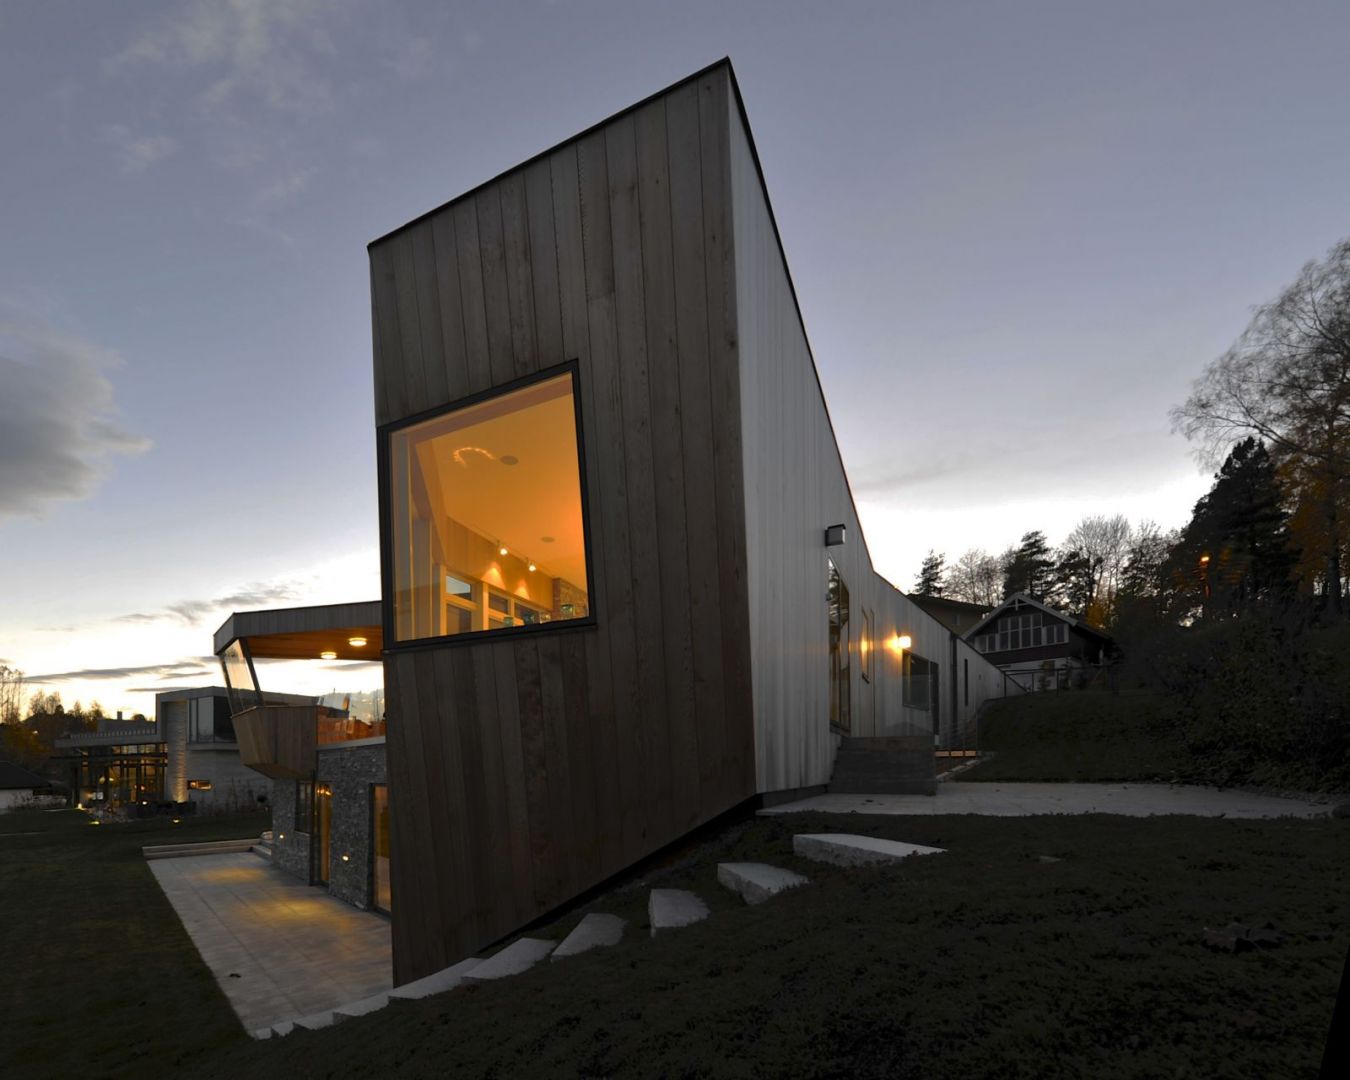 Drewniana i kamienna elewacja sprawiają, że dom dobrze komponuje się z naturalnym otoczeniem. Fot. Nils Petter Dale